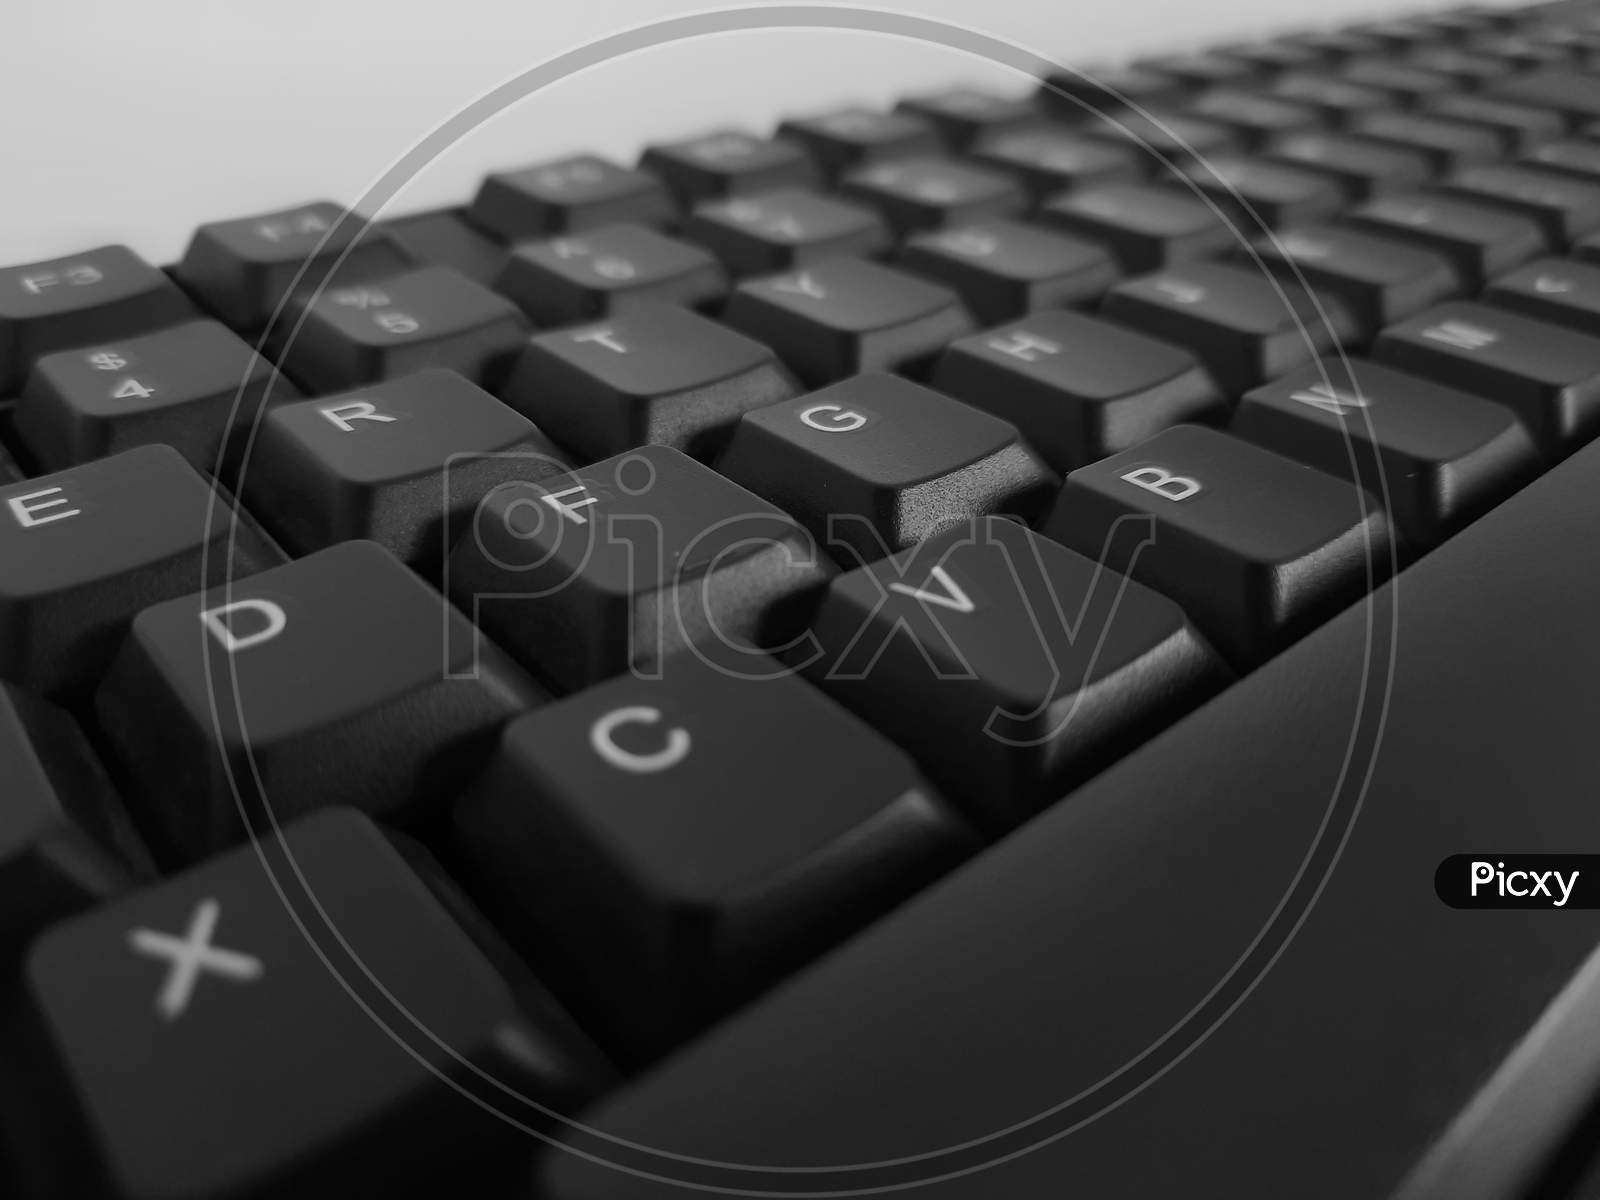 Keyboard keys in blurry effect. Keyboard macro shot with blurr.